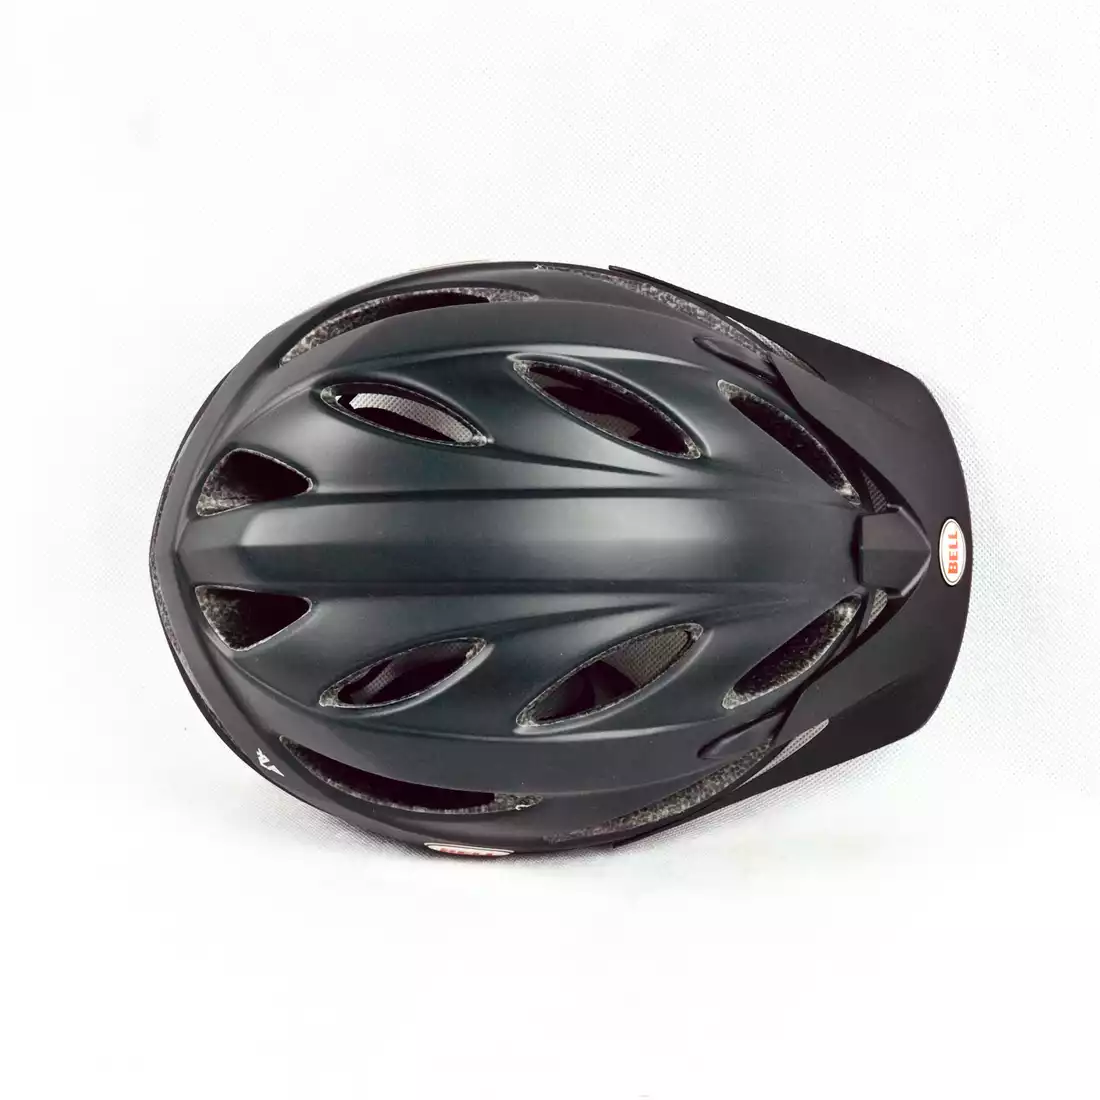 BELL XLP kask rowerowy, czarny mat, duży rozmiar